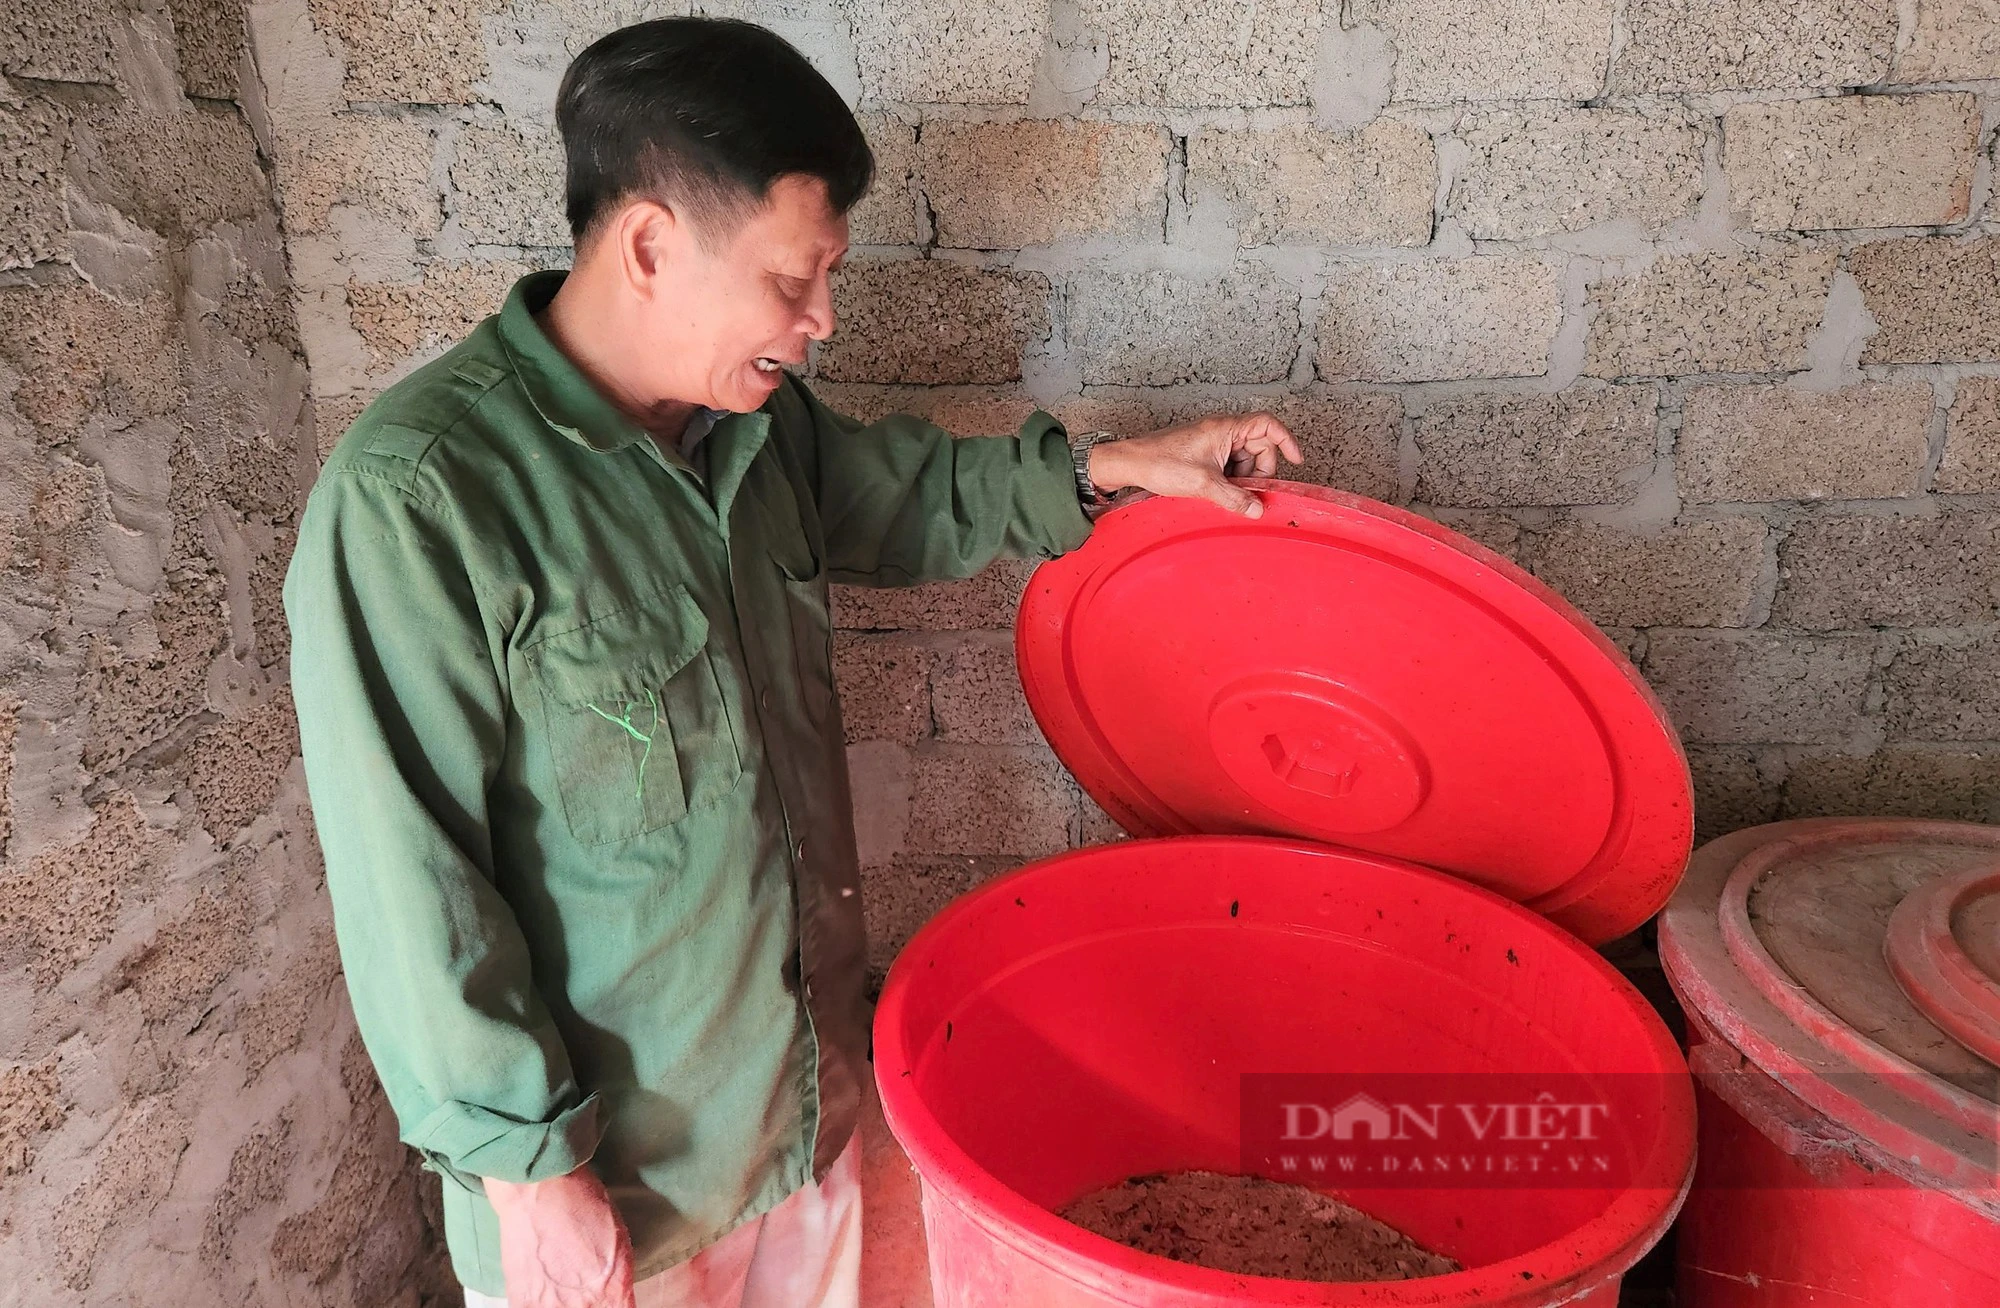 Một nông dân Nghệ An chế loại nước đặc biệt đem treo trong vườn tiền tỷ, côn trùng lập tức tránh xa- Ảnh 1.